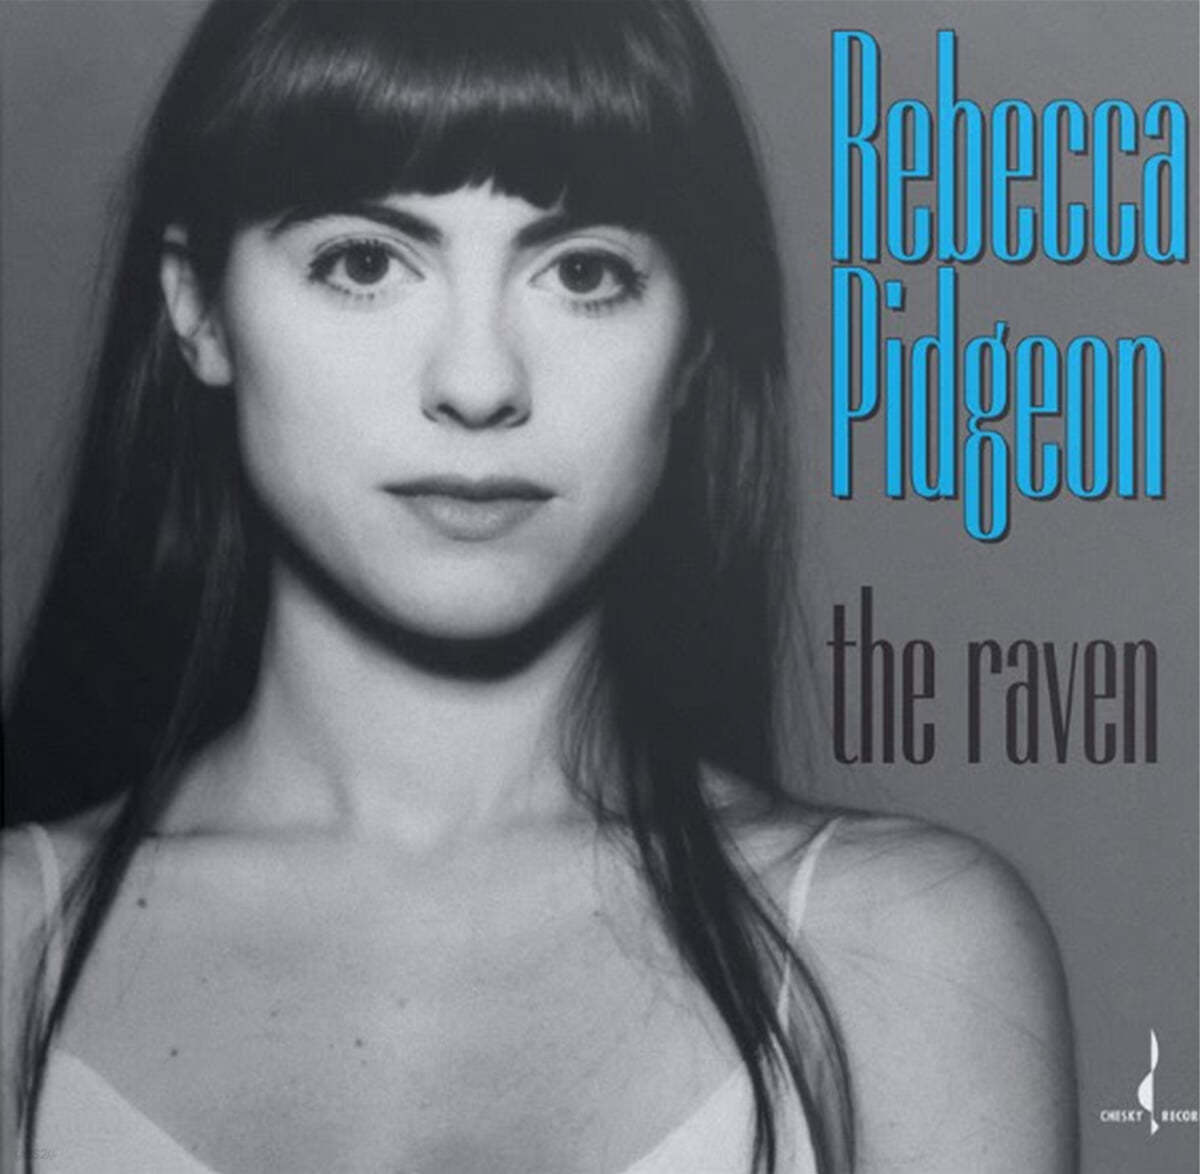 Rebecca Pidgeon (레베카 피존) - The Raven